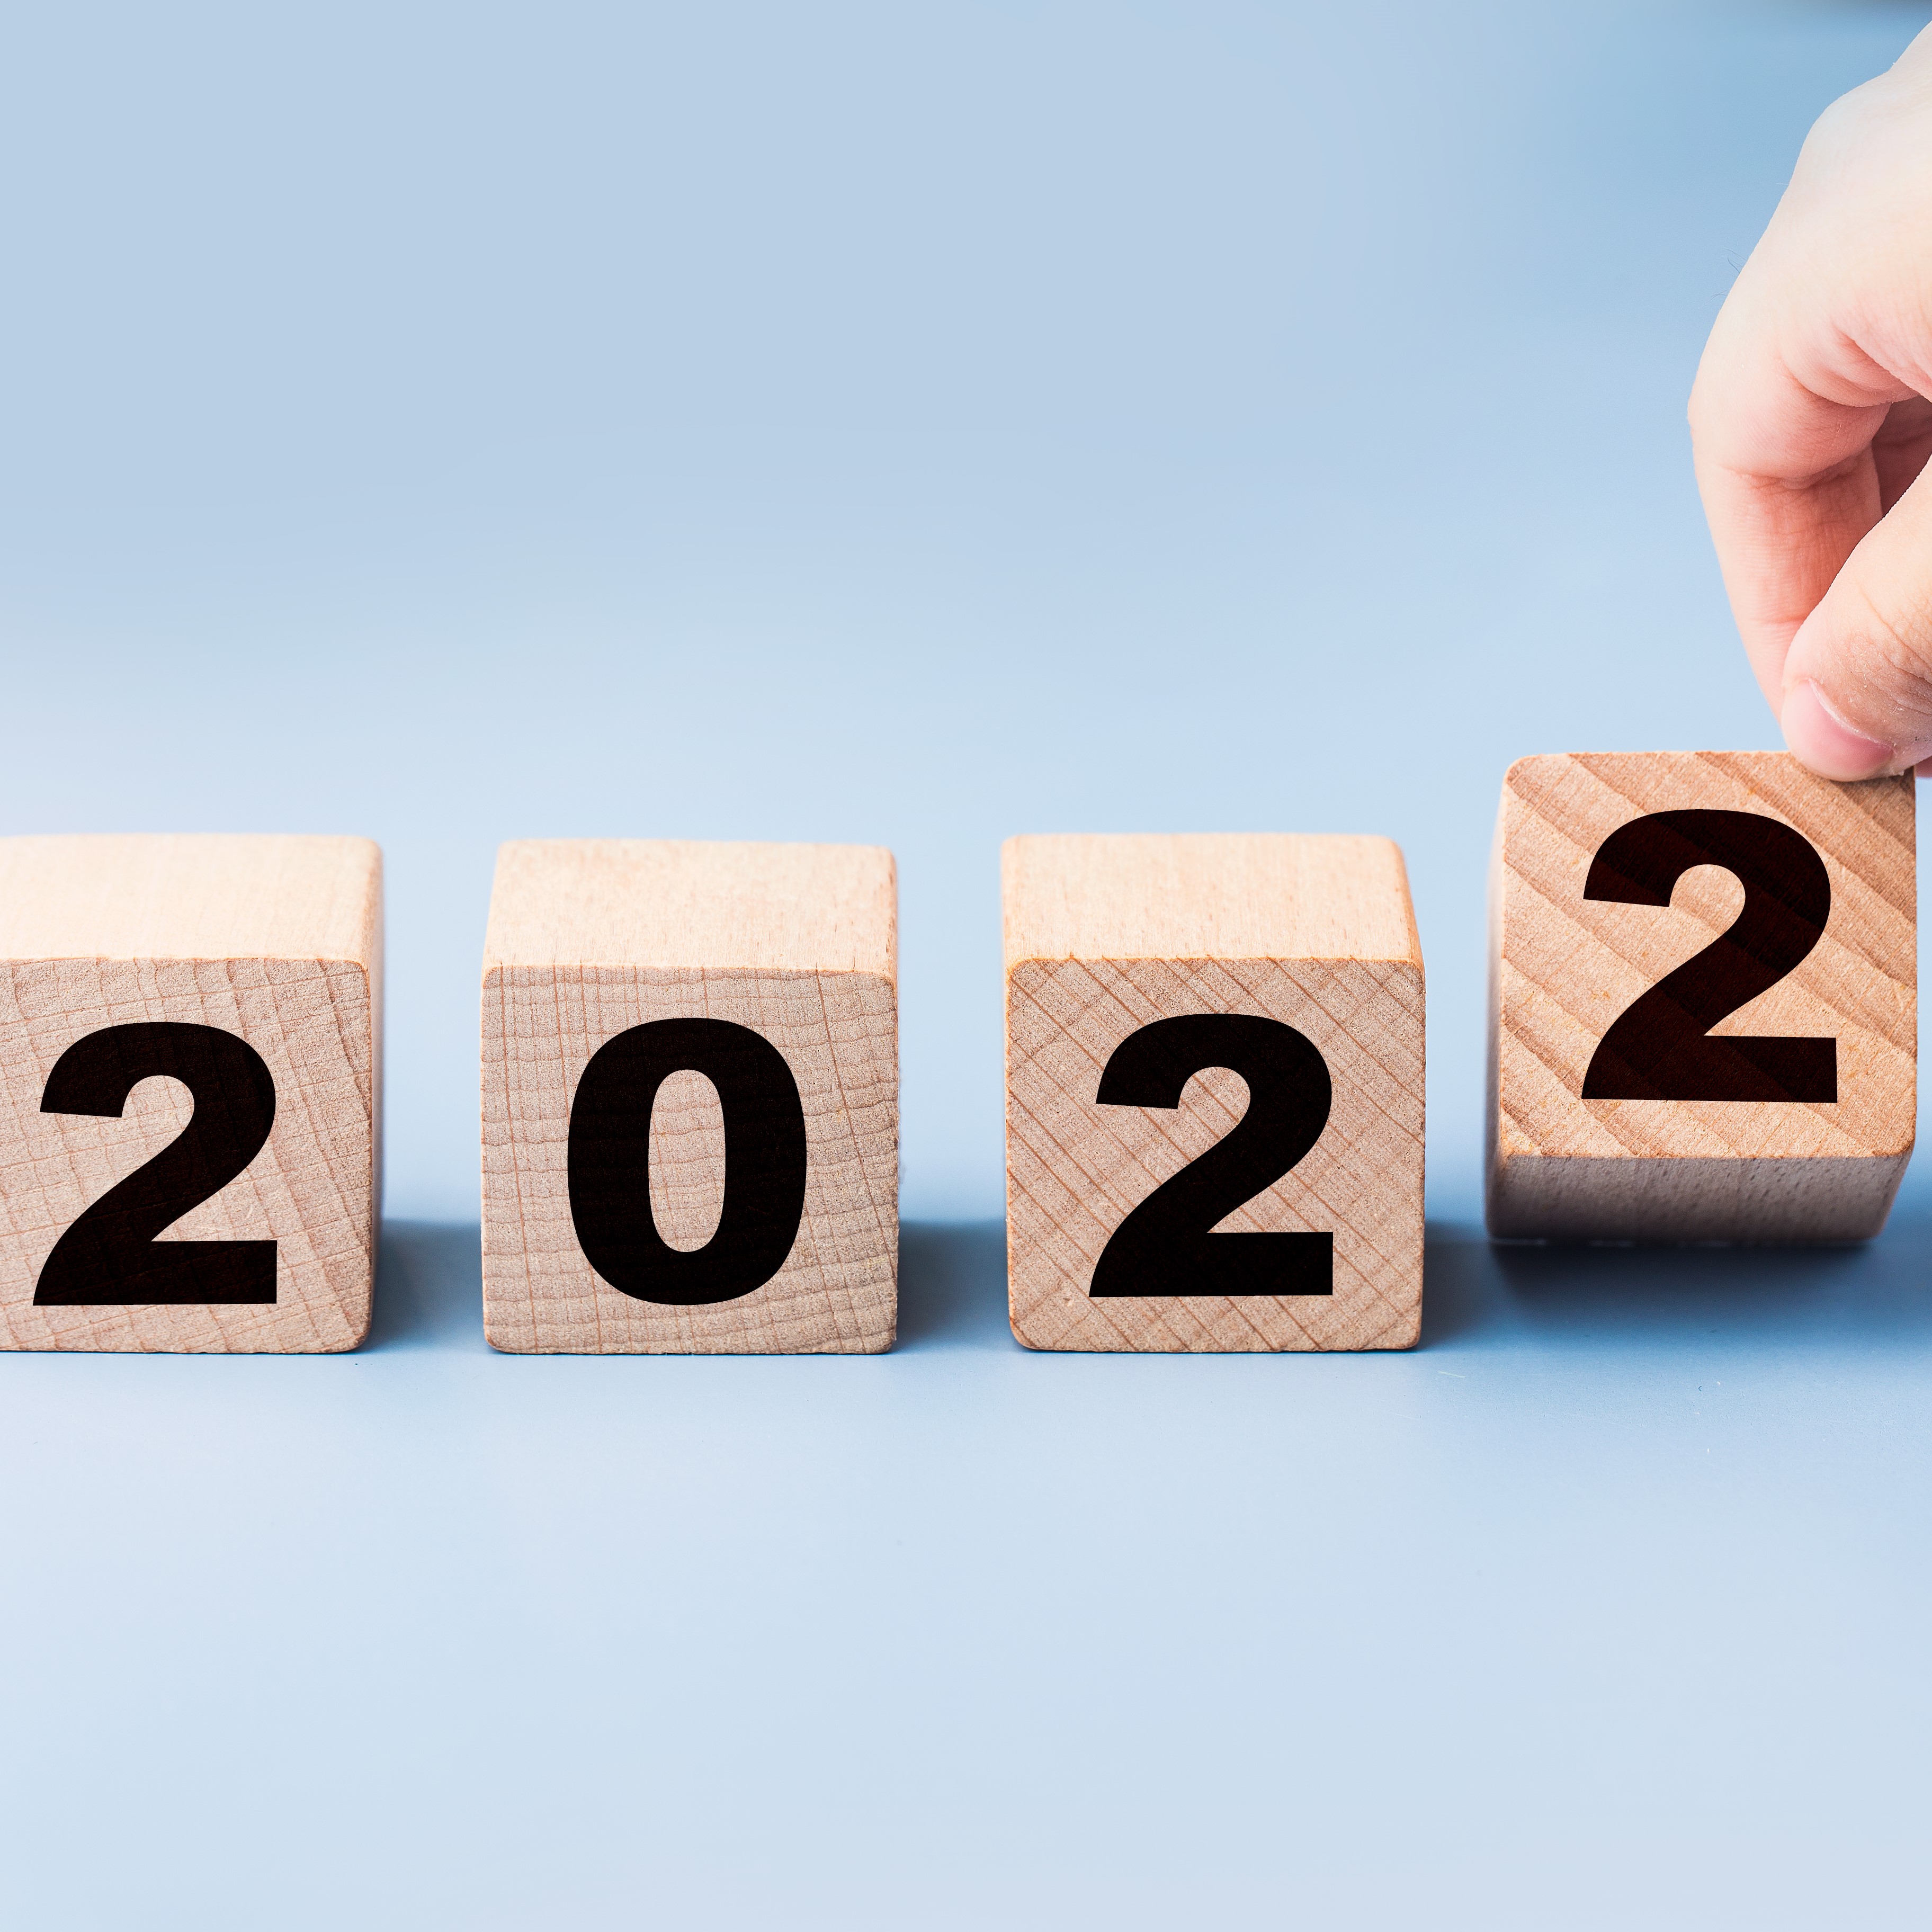 MDRT 회원들의 2022년 새해 결심 및 계획